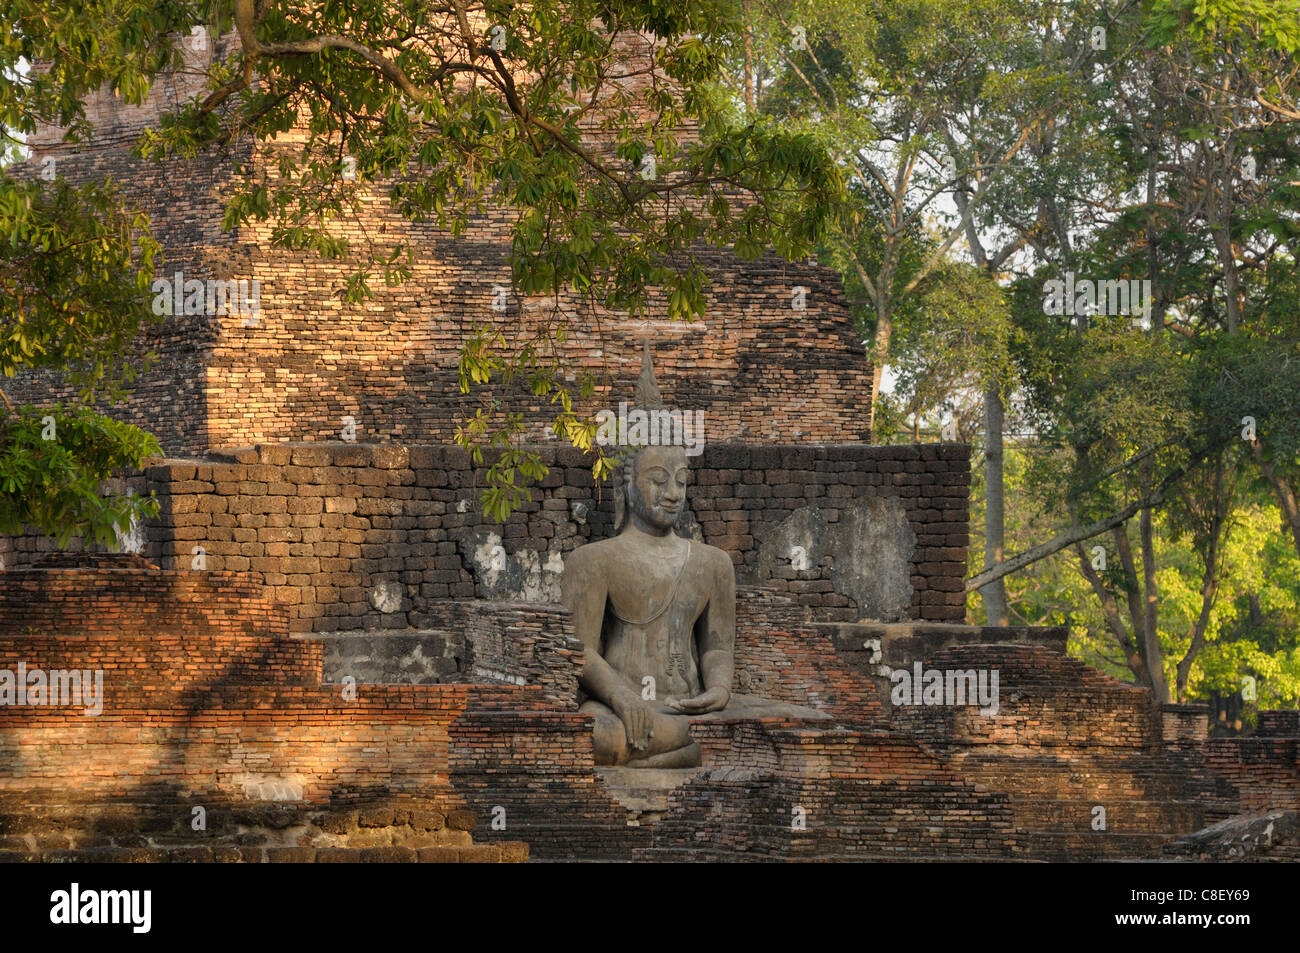 Wat Mahathat, Sukhothai, parco storico, UNESCO Patrimonio Mondiale, sito, Thailandia, Asia Foto Stock